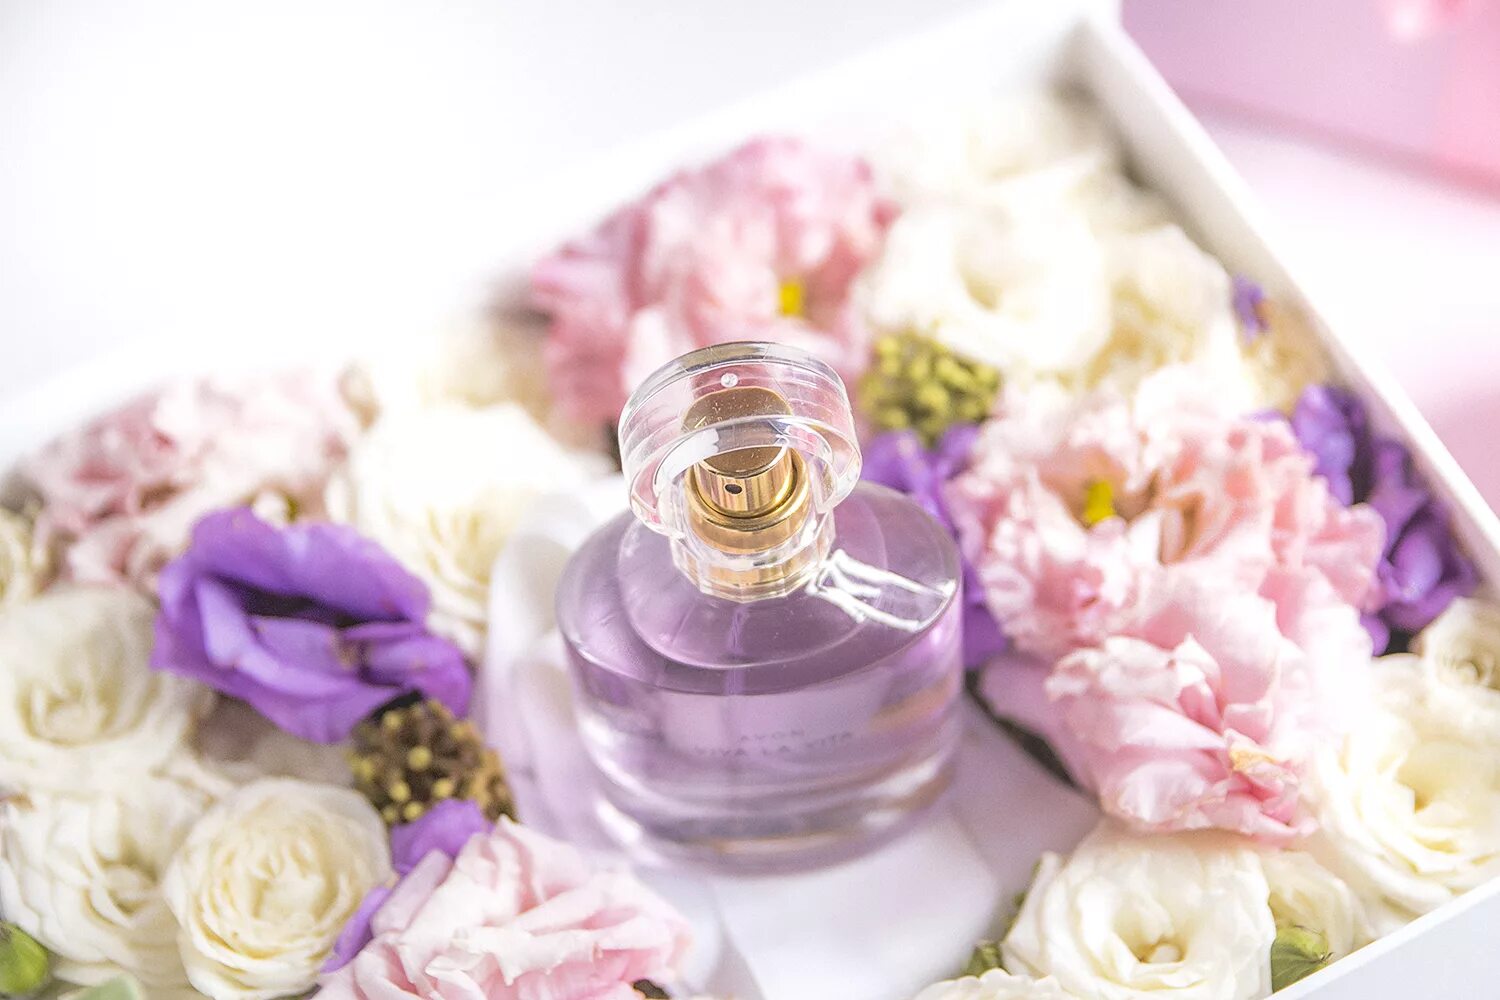 Благоухание ароматов. Parfum Avon Fon. Духи и цветы. Аромат весны.